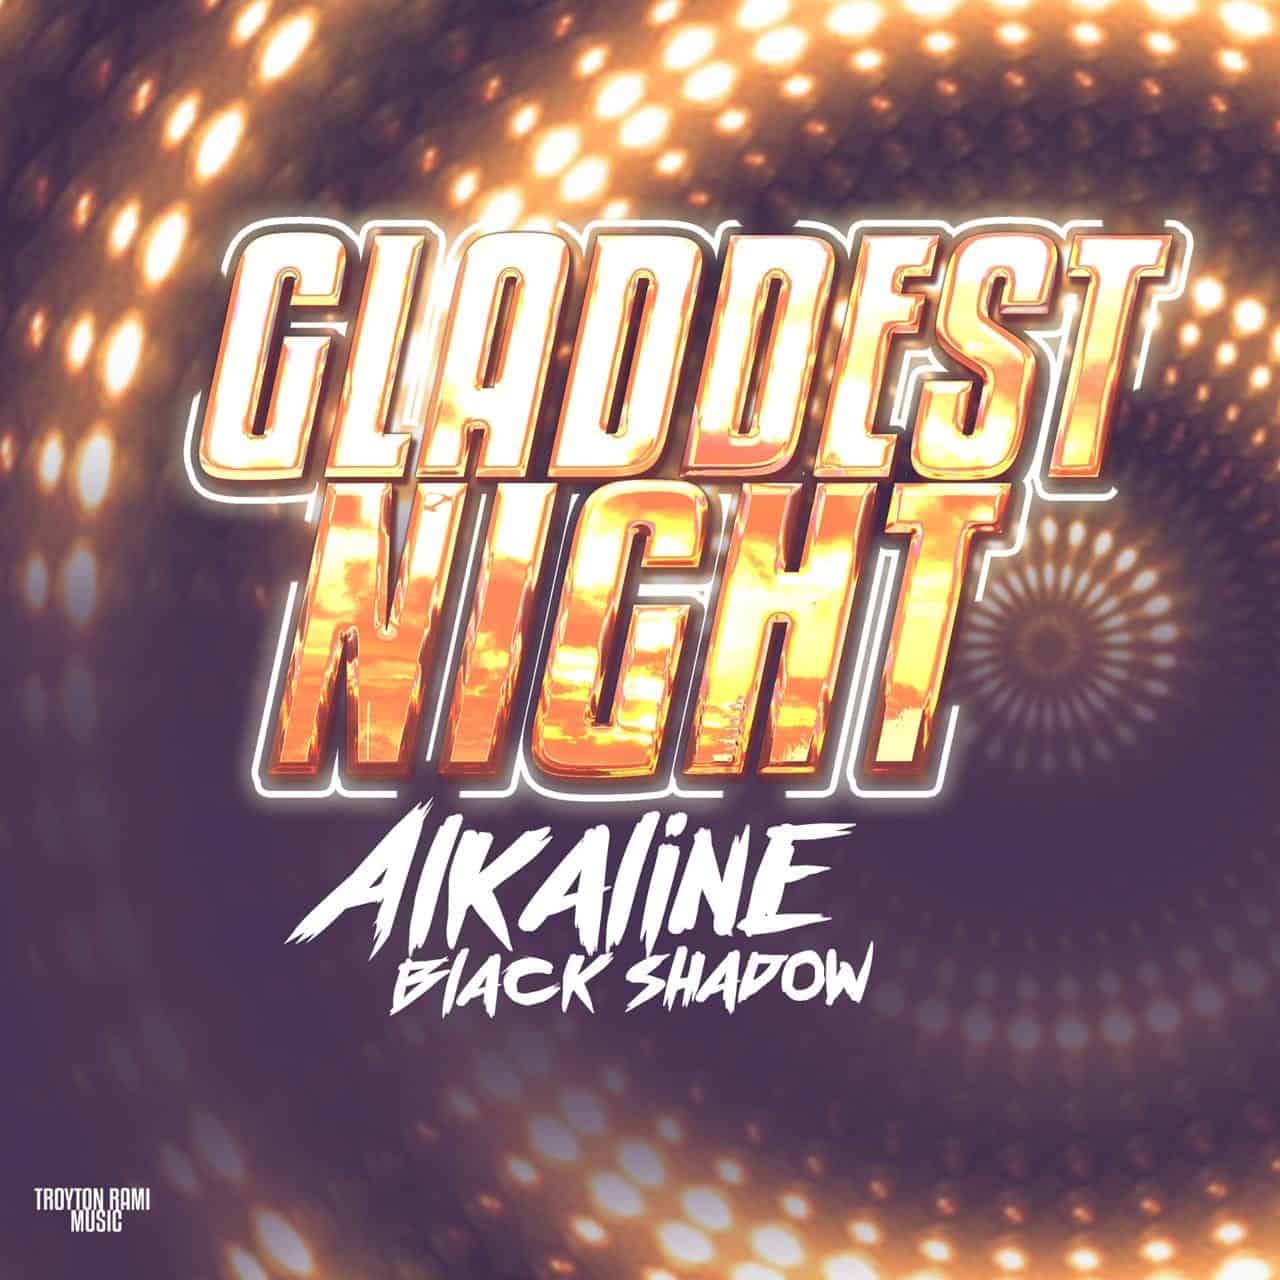 Alkaline & Black Shadow - Gladdest Night - Produced by Troyton Rami Music